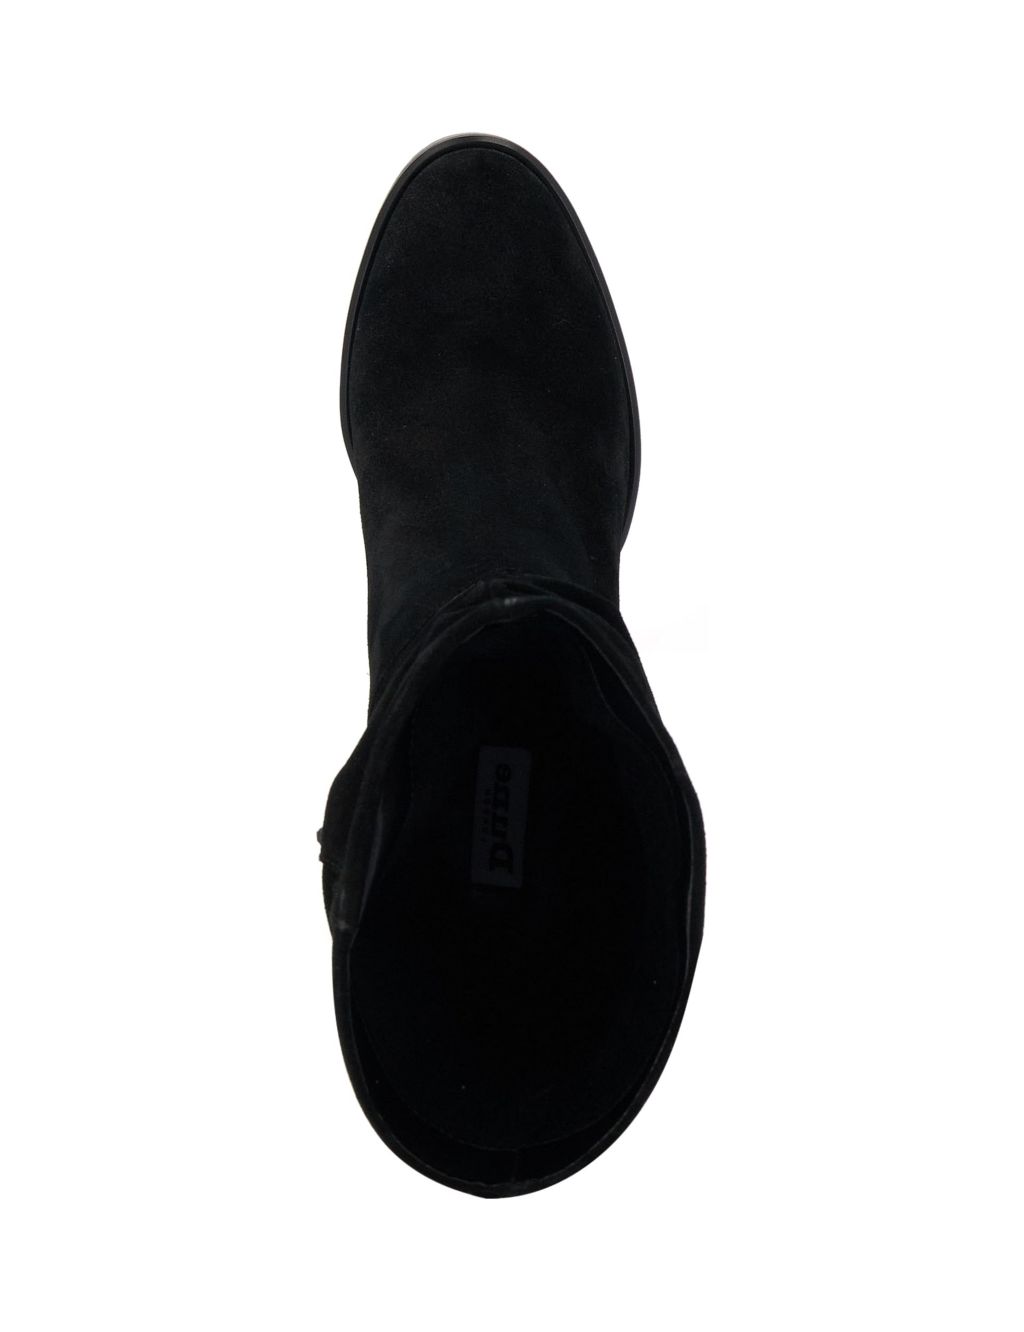 Suede Block Heel Round Toe Boots image 4